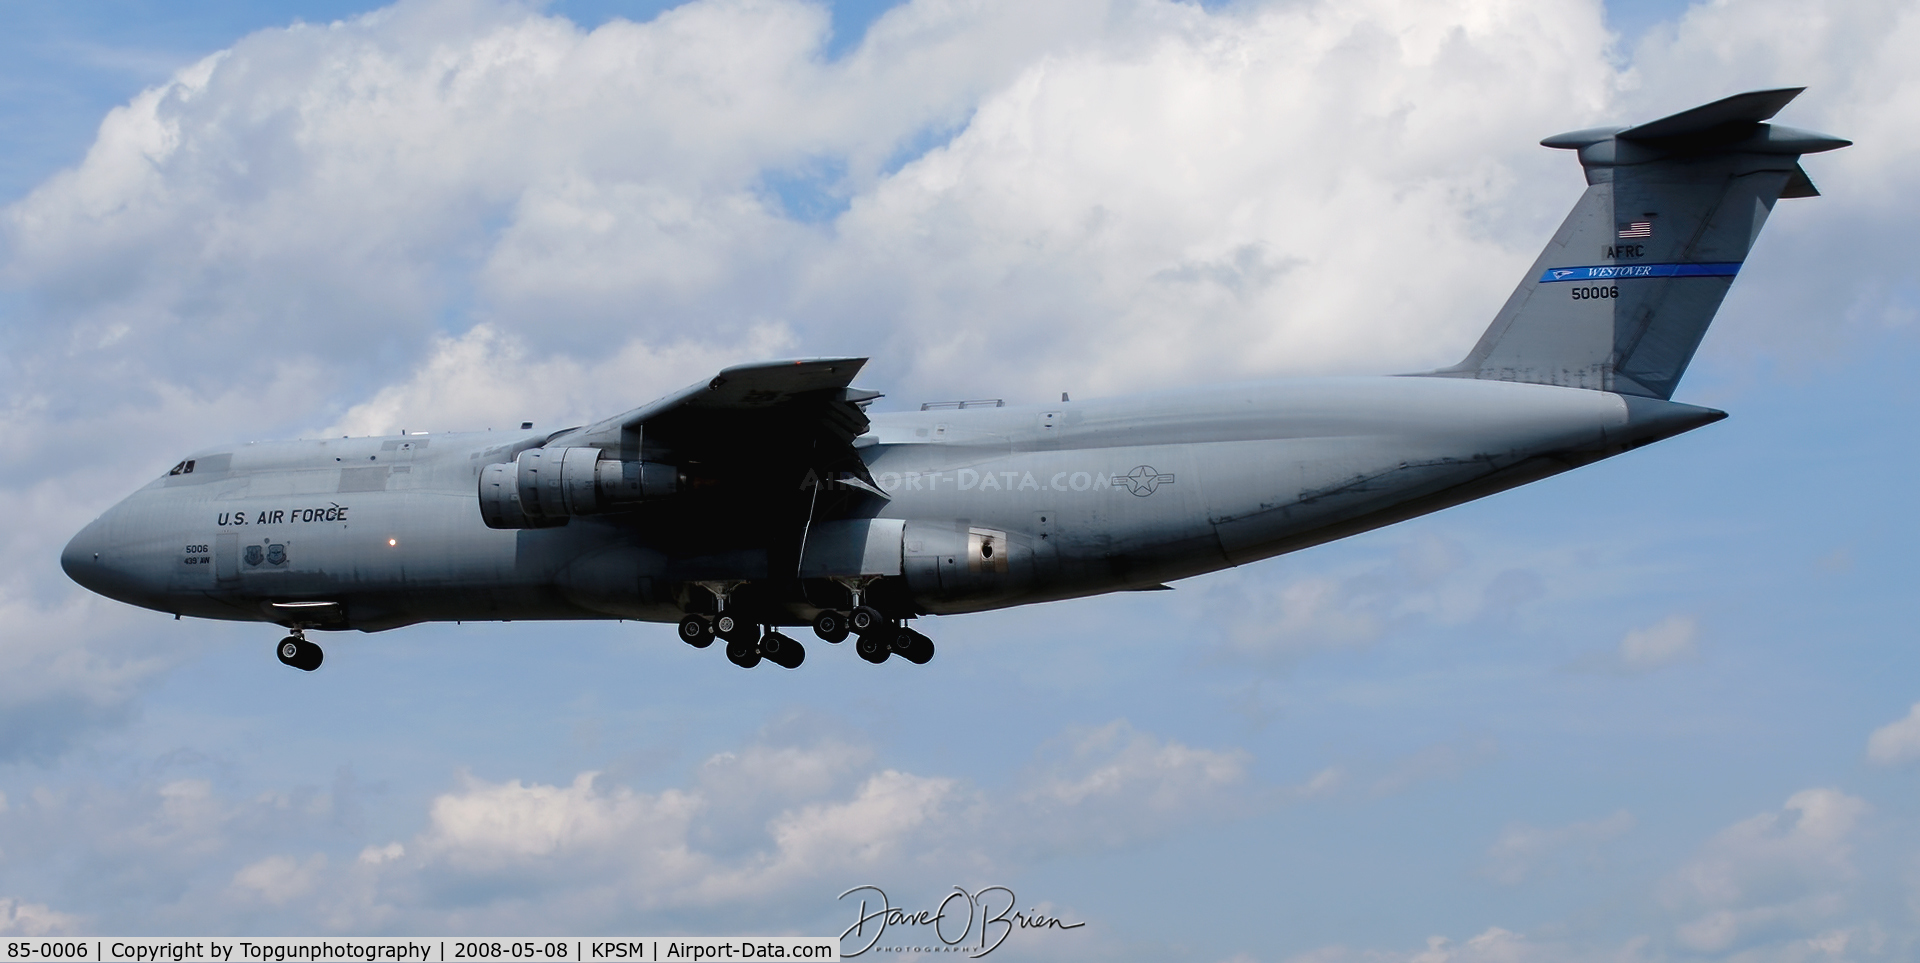 85-0006, 1985 Lockheed C-5B Galaxy C/N 500-0092, RODD21 short approach